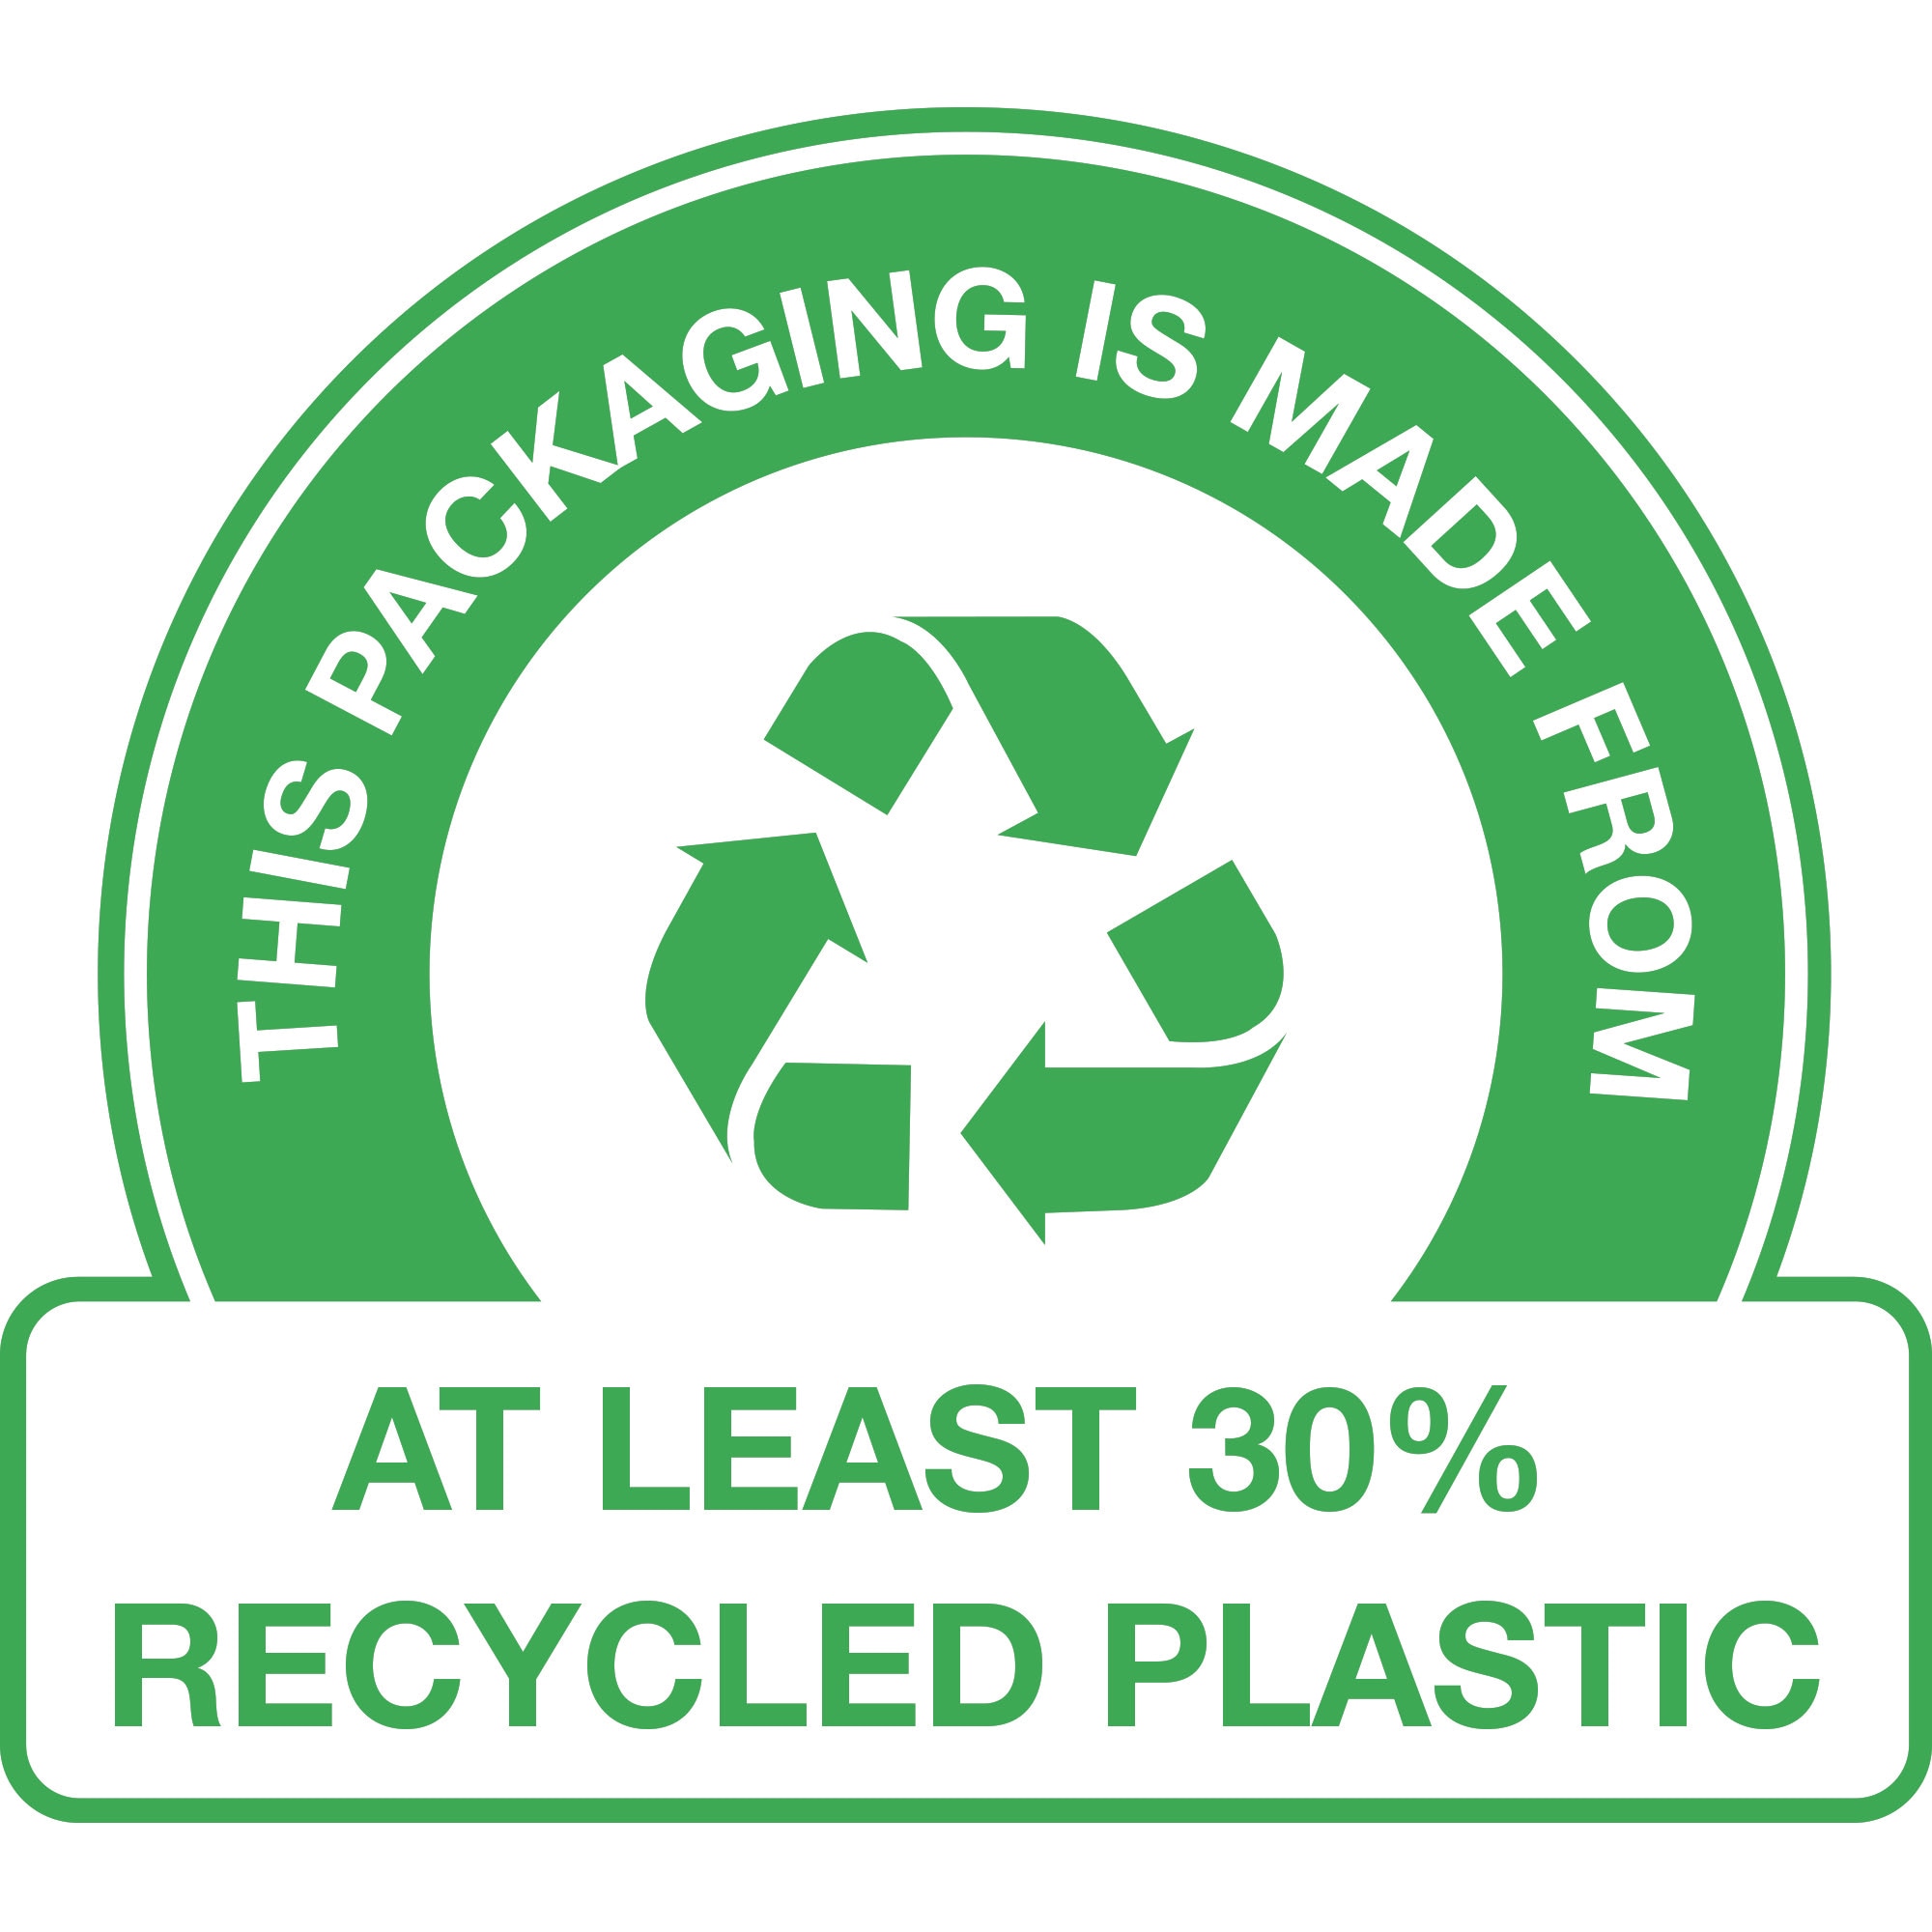 ESTA EMBALAGEM É FEITA COM – Pelo menos 30% de plásticos reciclados